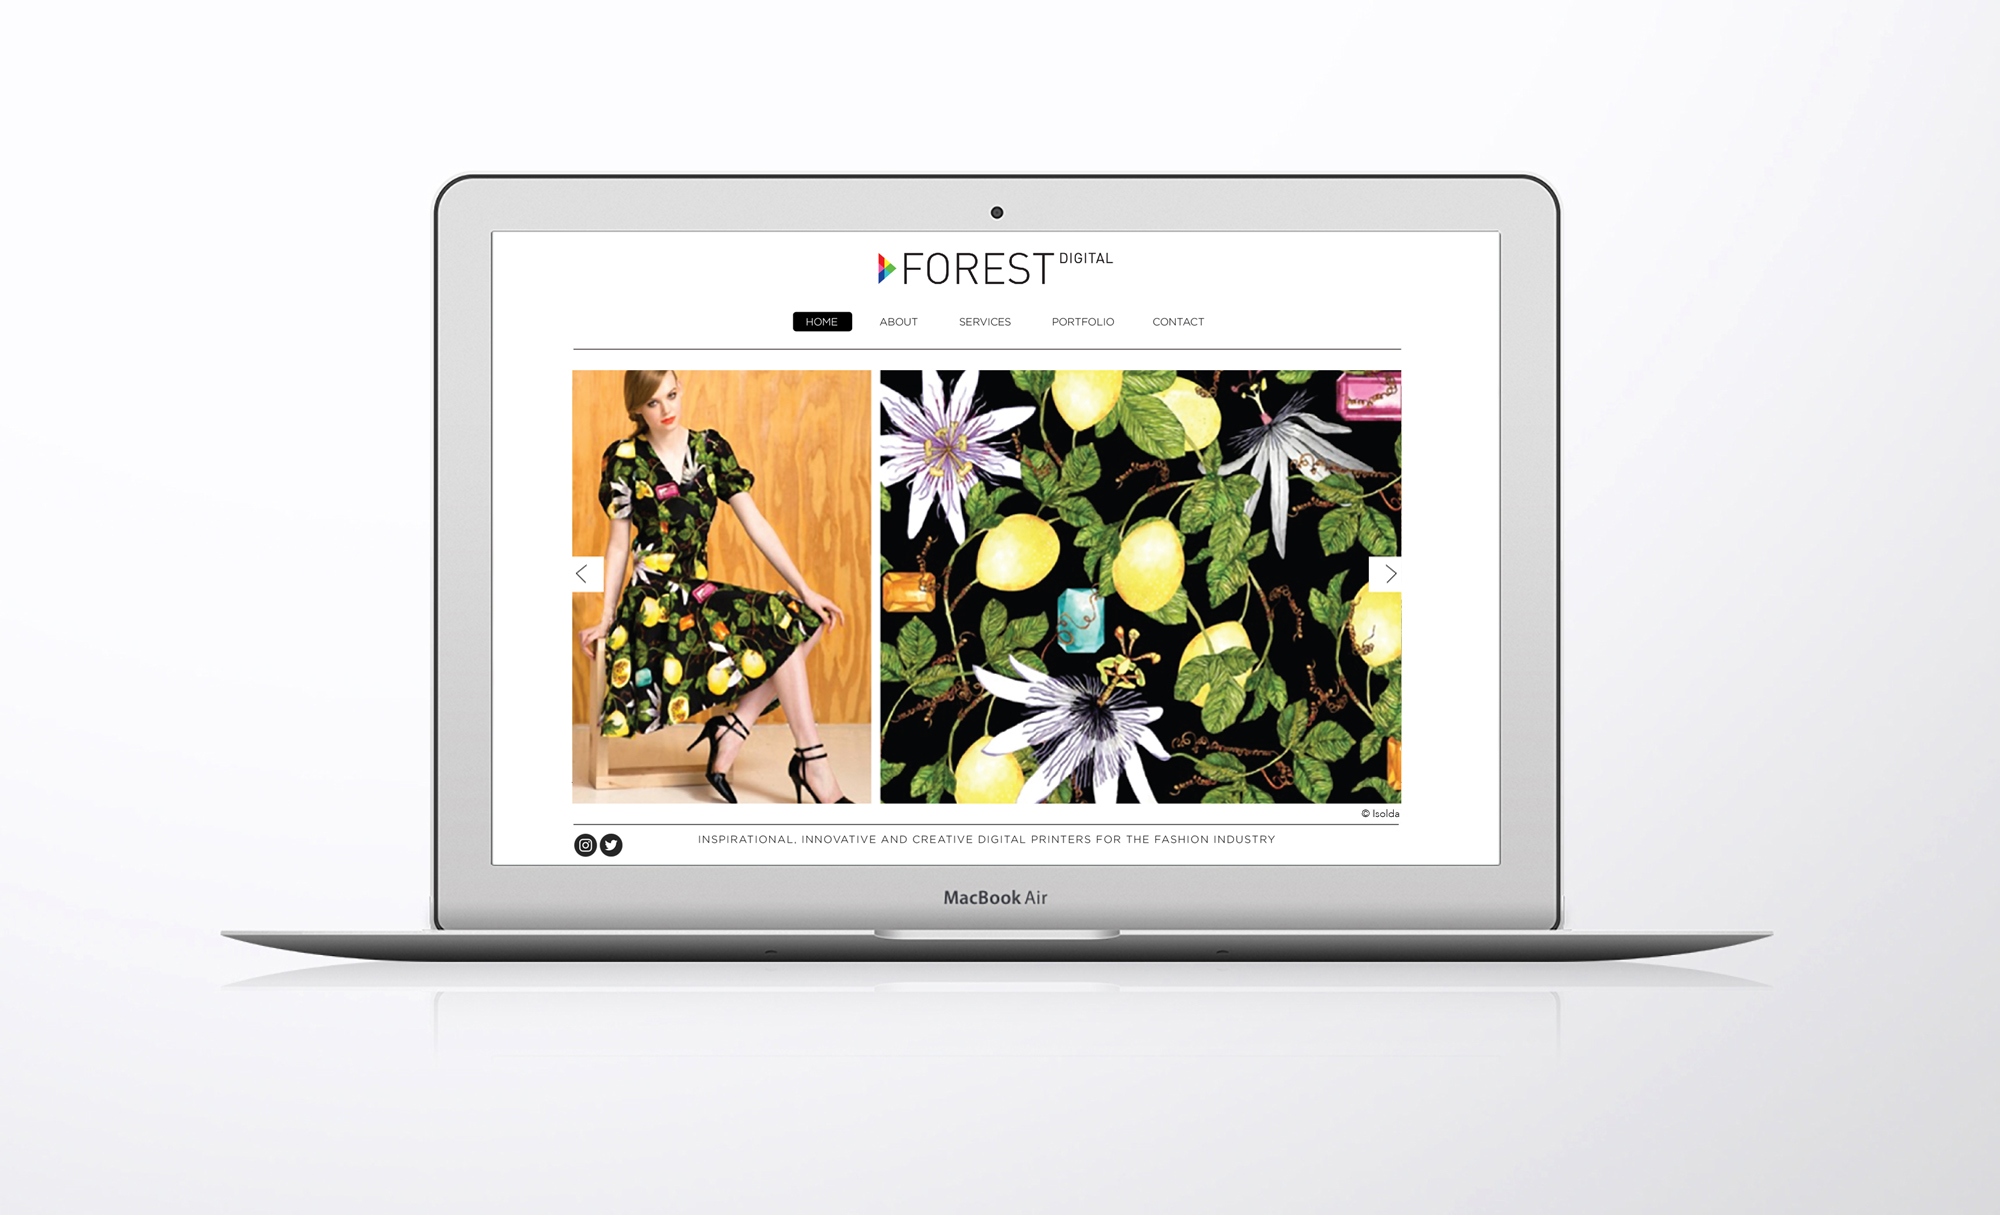 Forest Digital website 2